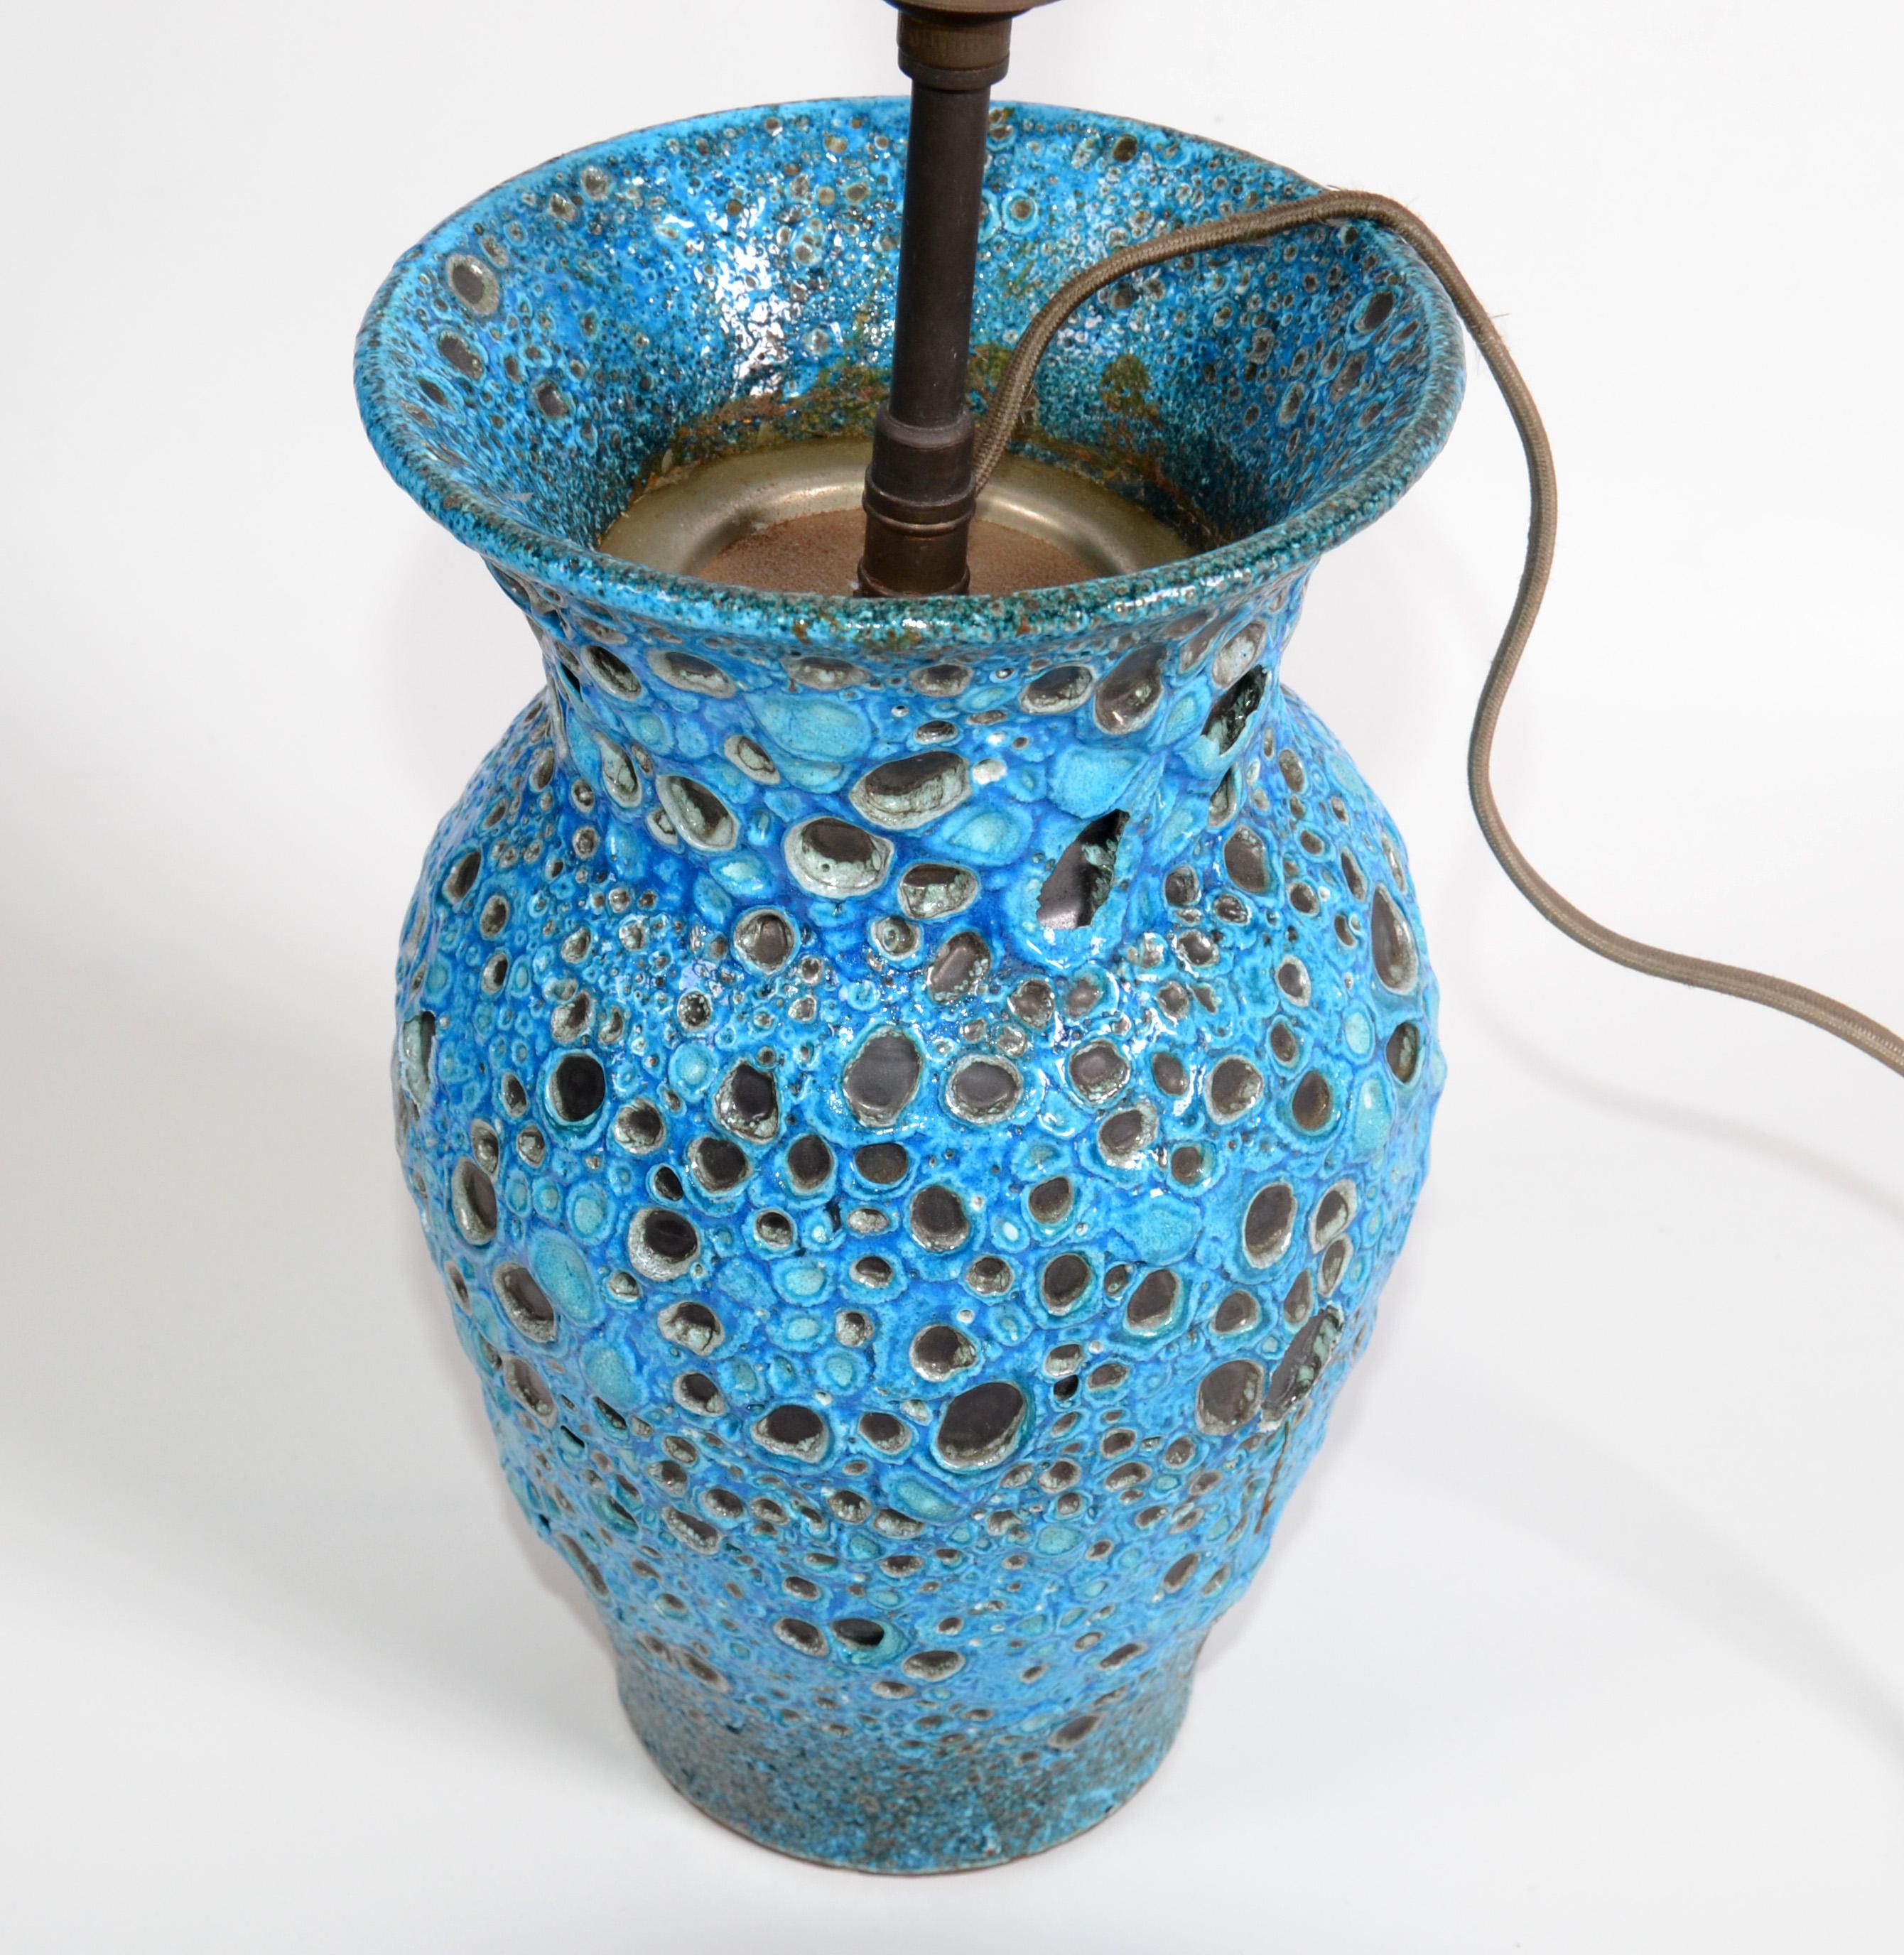 Superbe lampe de table en céramique émaillée turquoise de Vallauris (village de la Côte d'Azur où Picasso, Matisse et Jean Marais travaillaient).
Le câblage sera refait pour les Etats-Unis et il faut une ampoule sur le dessus de la lampe.
Note :